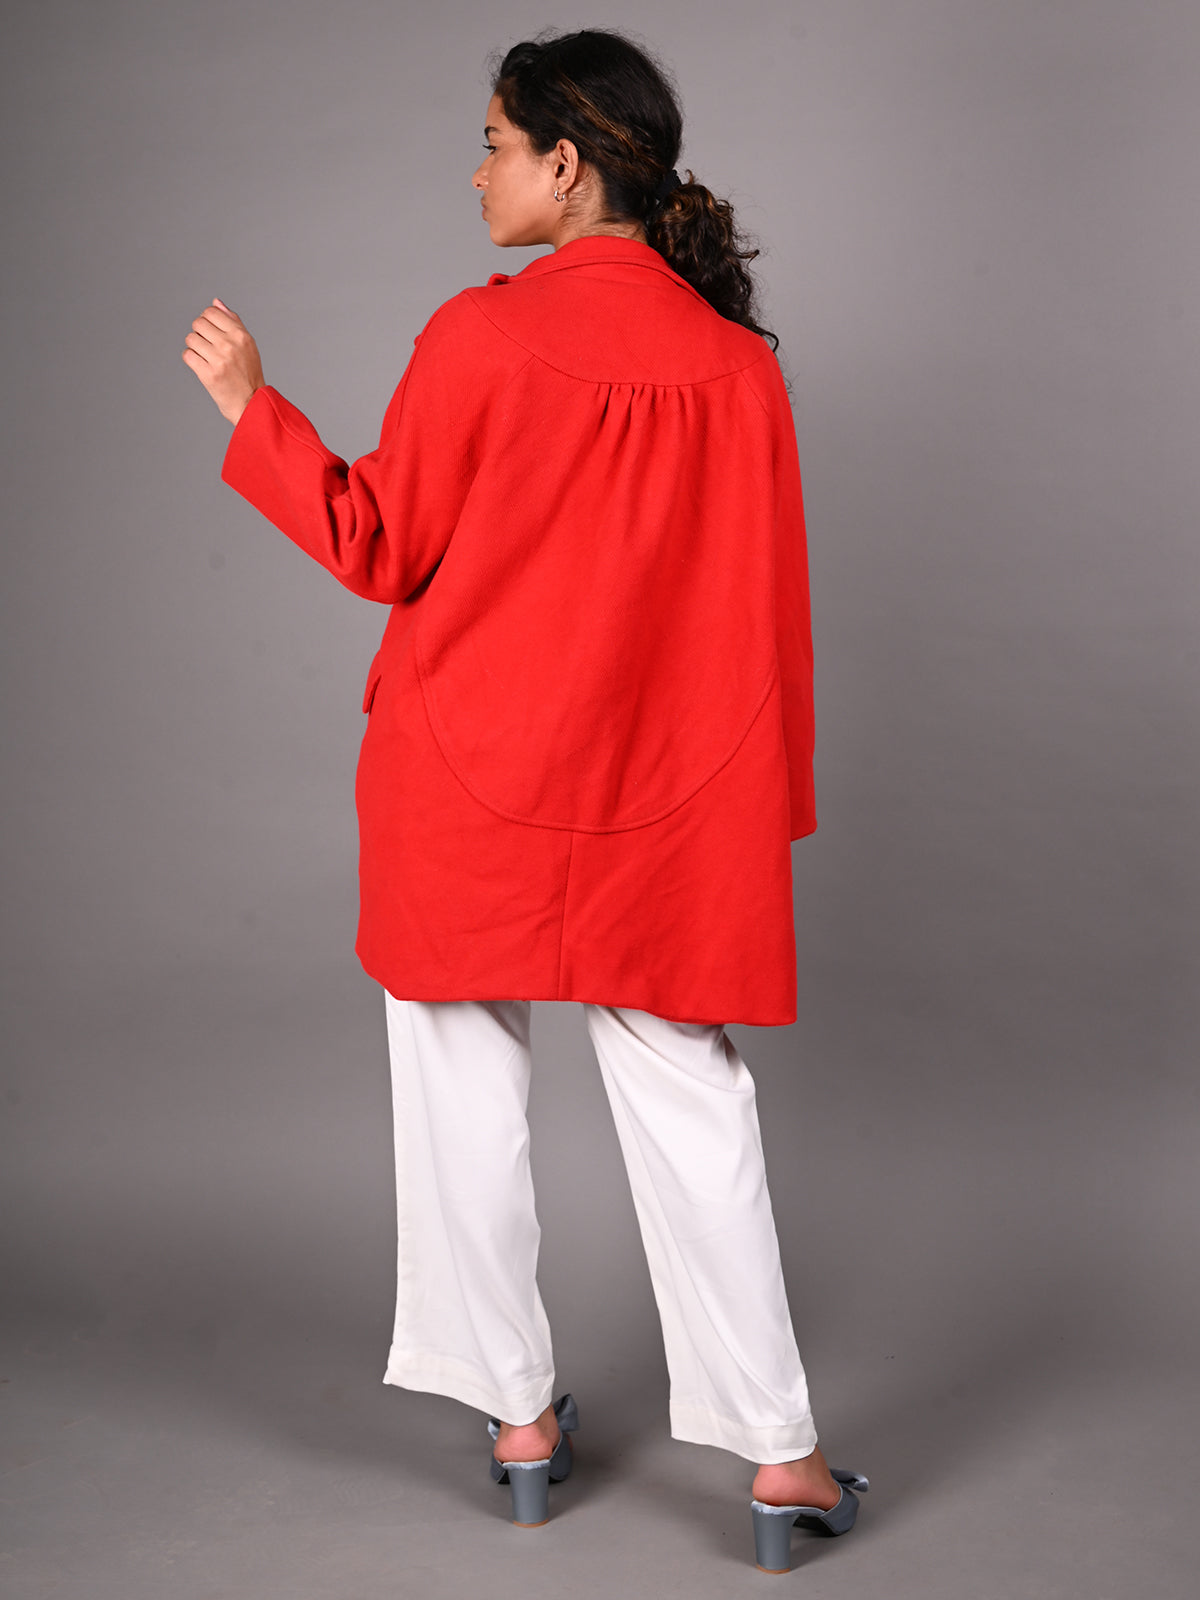 Odette Red Textured Woollen Overcoat for Women